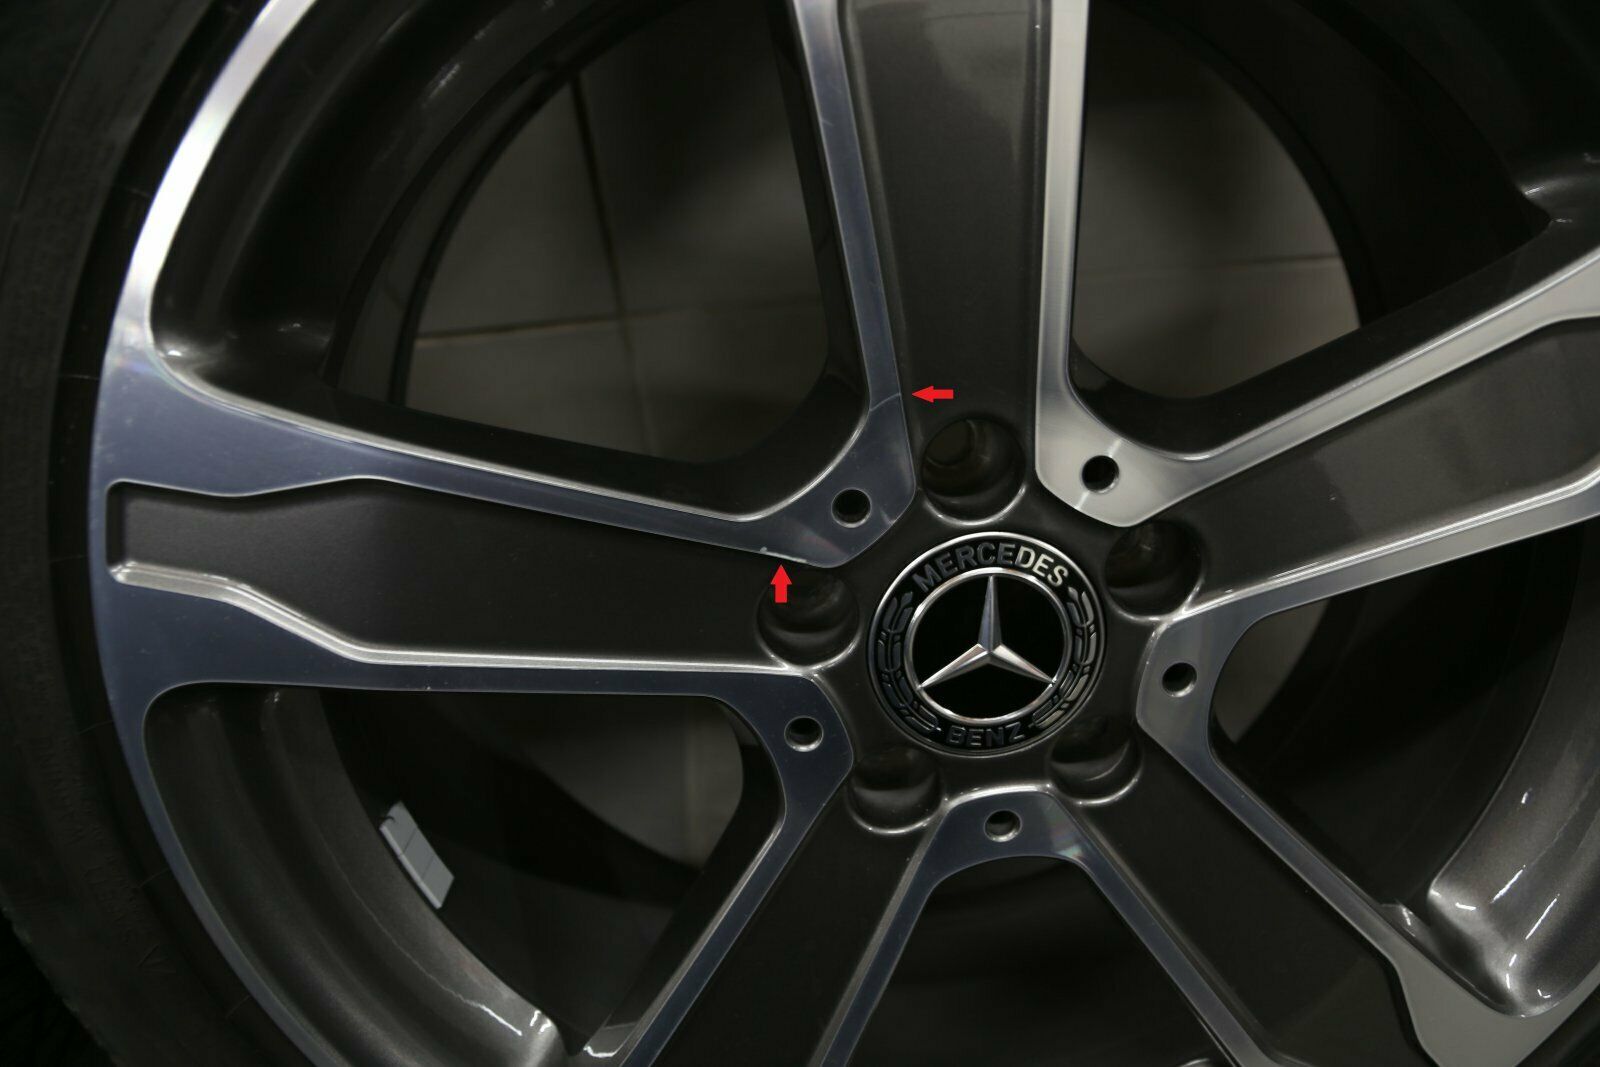 19 pouces roues d'hiver d'origine Mercedes GLA X156 Jantes en aluminium A1564010300 Jantes